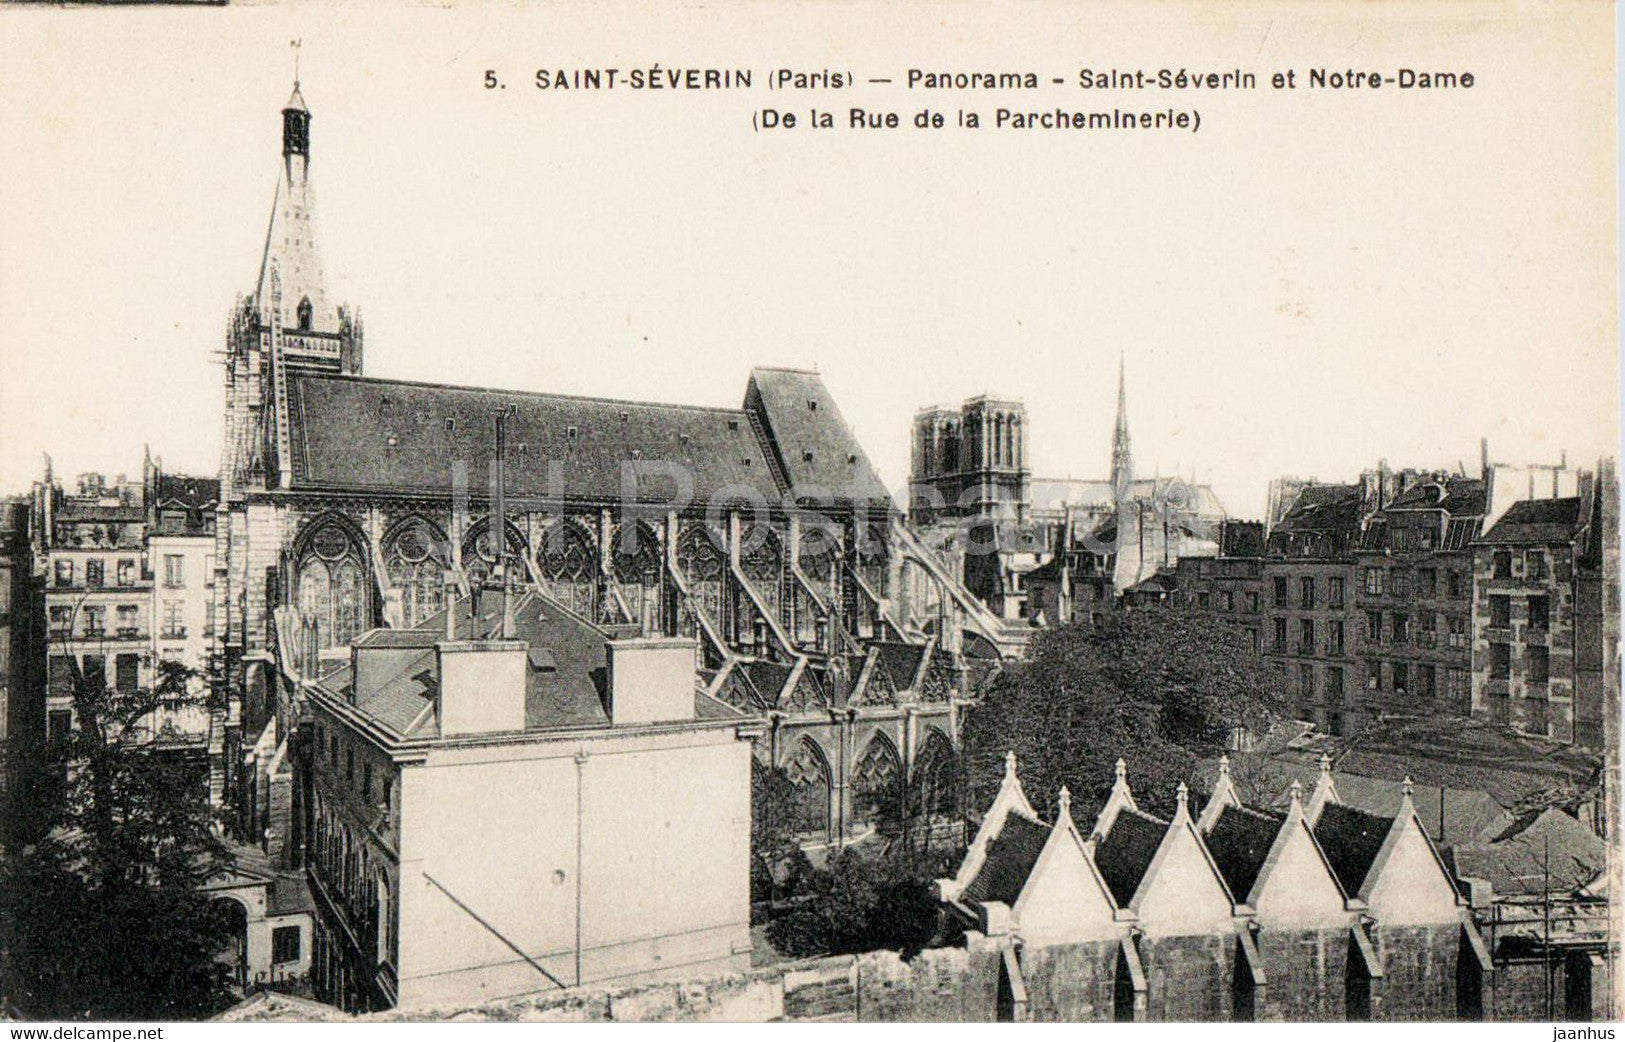 Paris - Saint Severin - Panorama - Notre Dame  - De la Rue de la Parcheminerie - 5 - old postcard - France - unused - JH Postcards